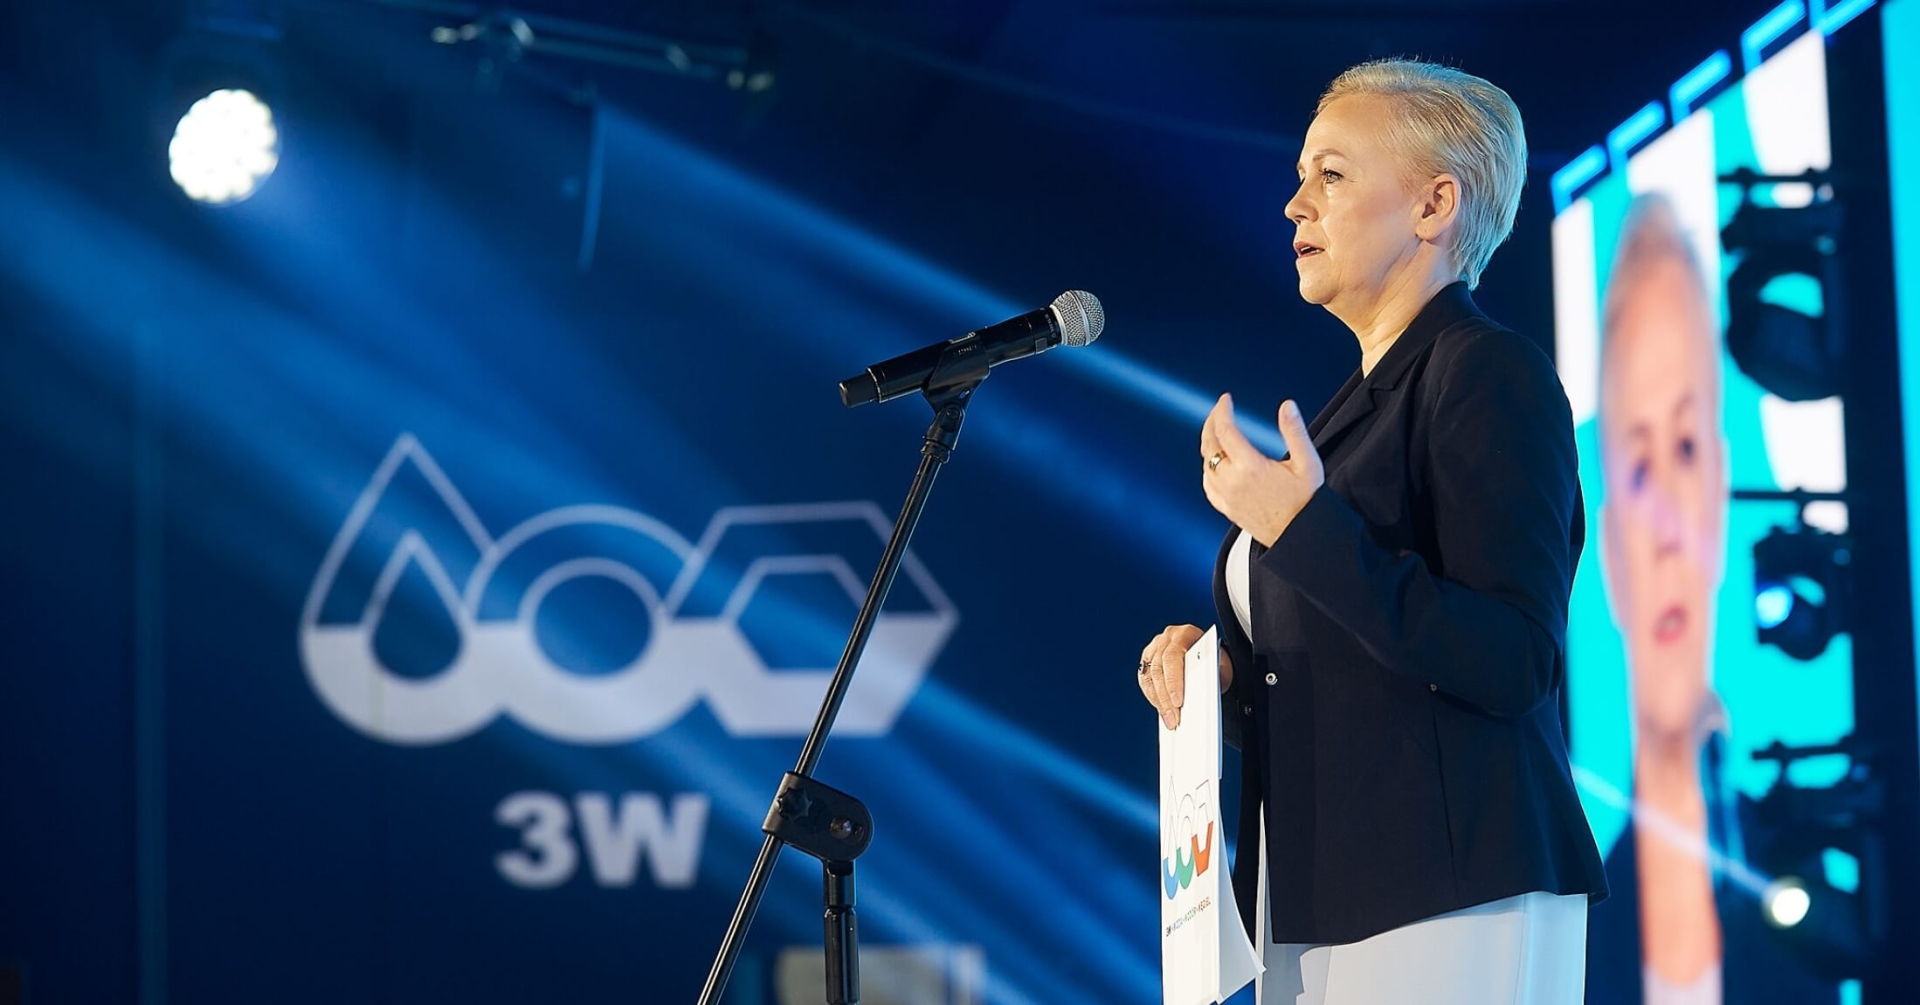 The 3W concept - speech by Beata Daszyńska - Muzyczka, President of BGK